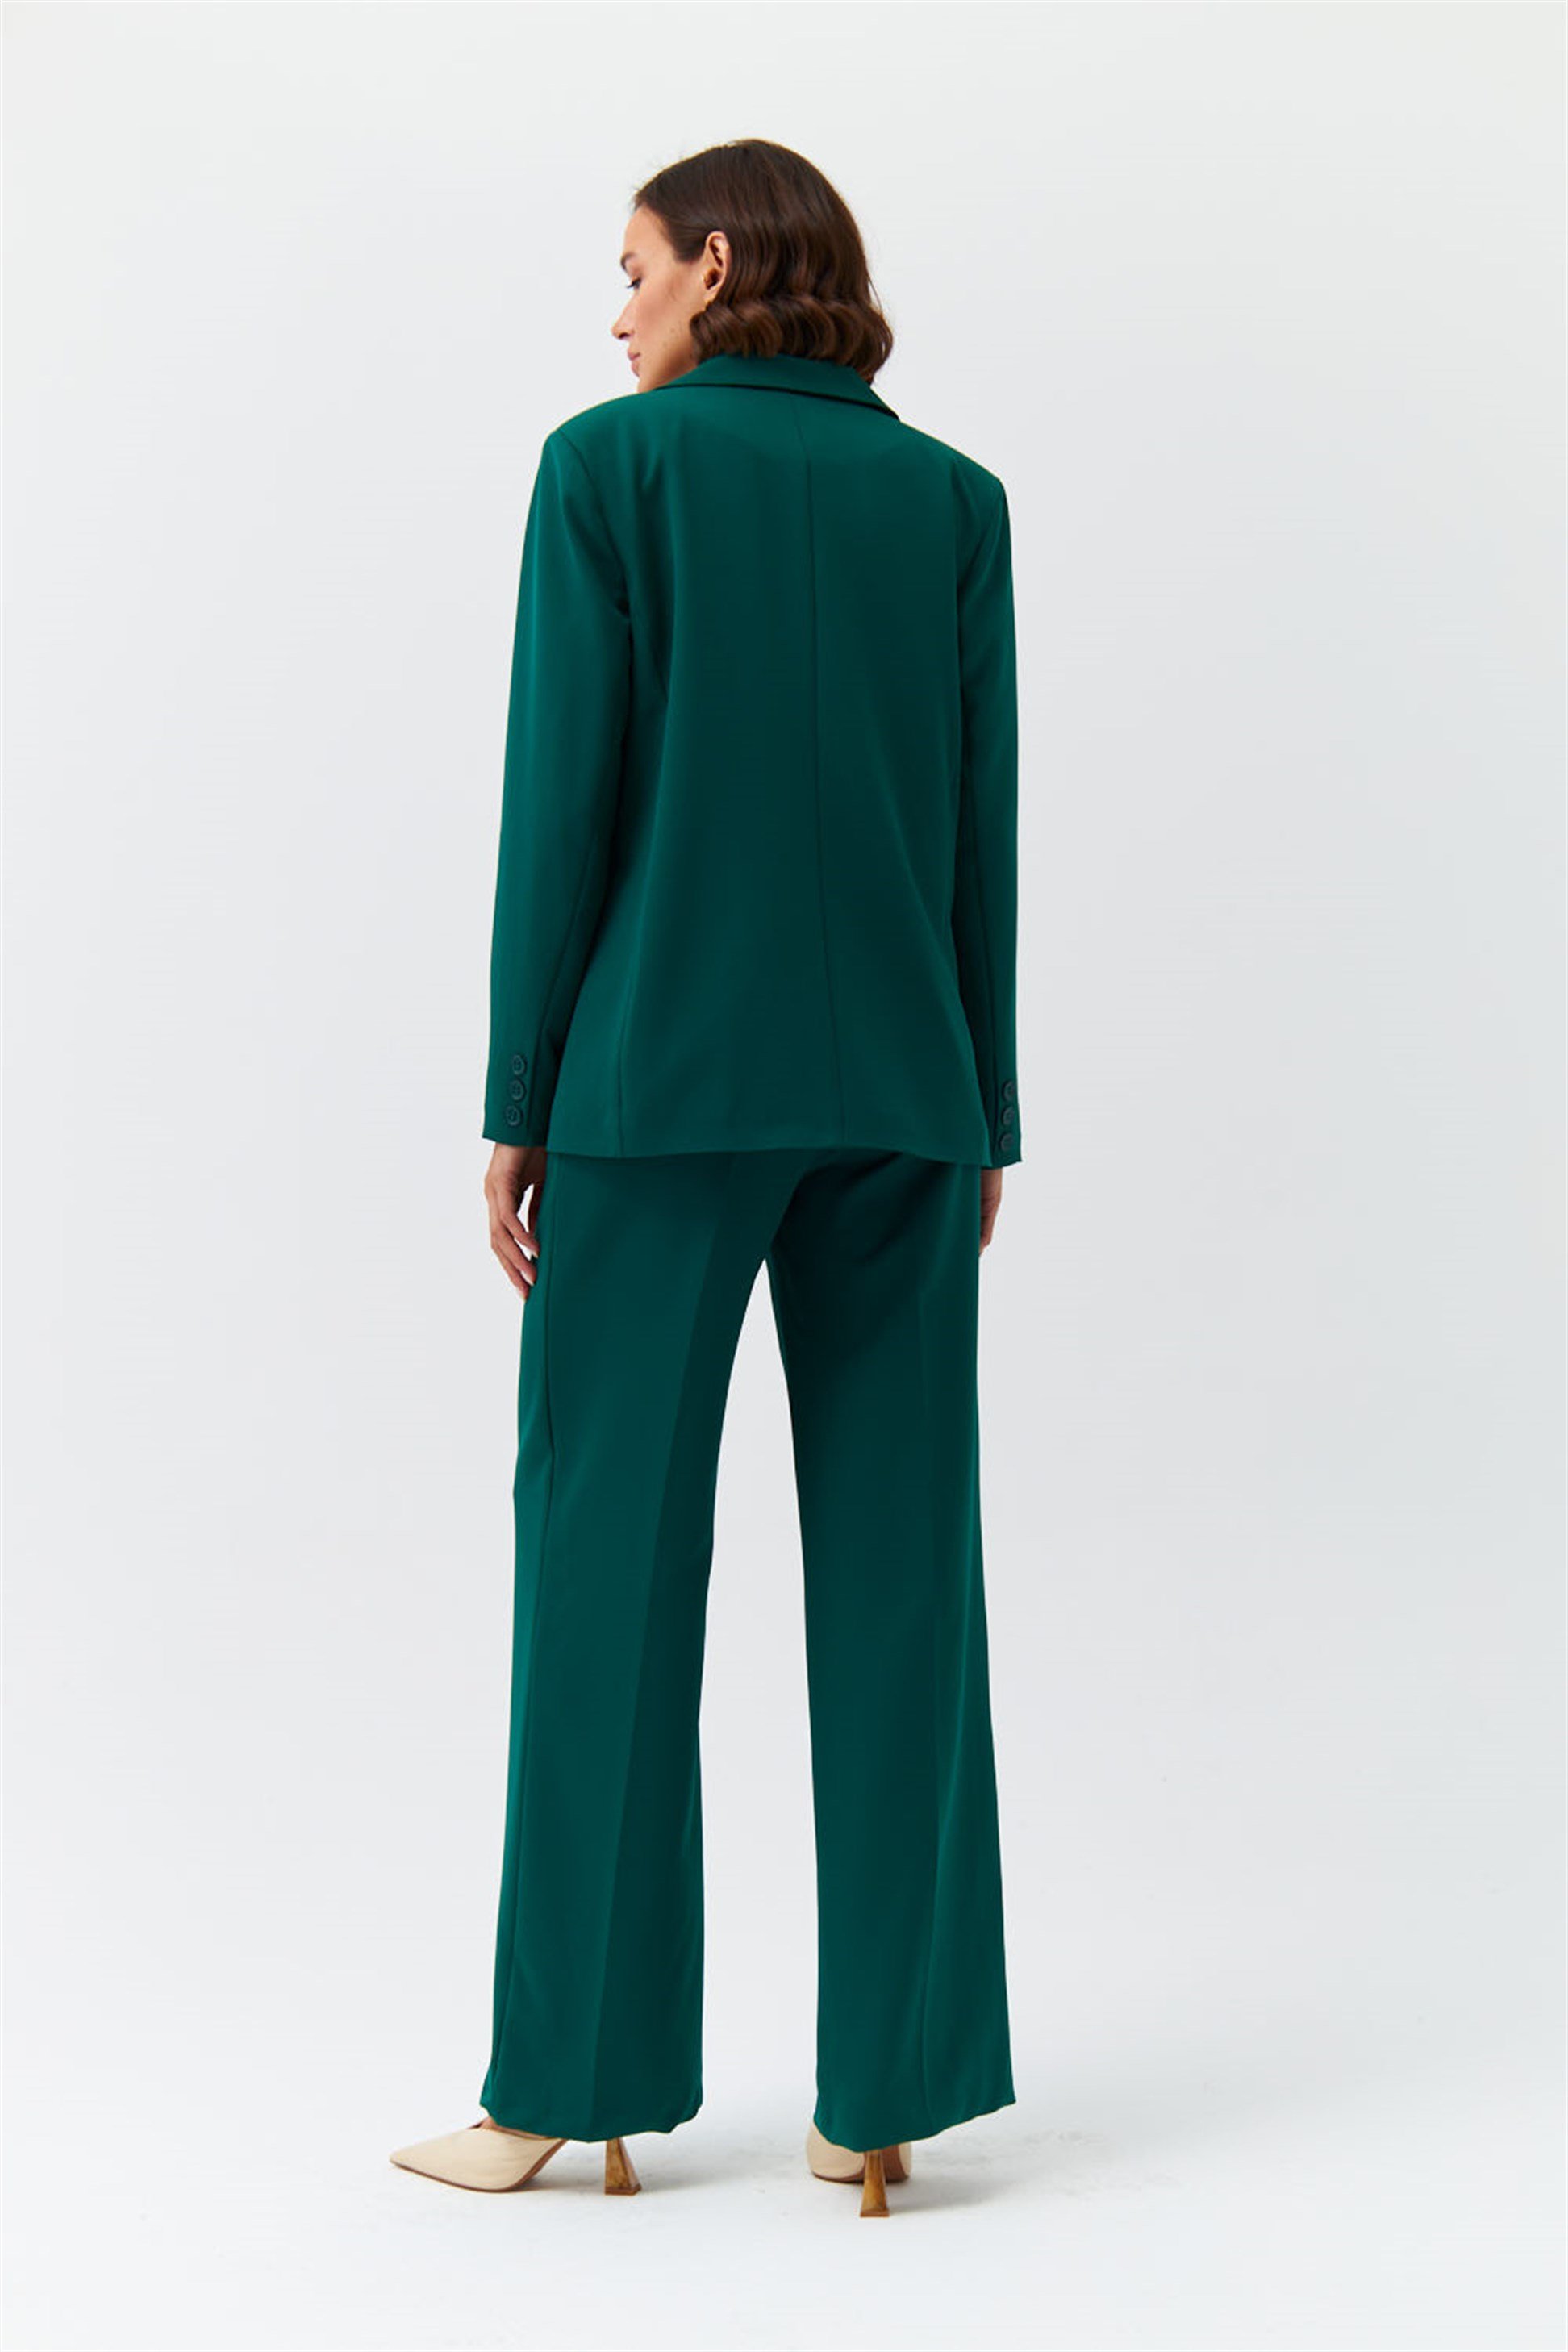 Blazer Zümrüt Yeşil Kadın Ceket | Tuba Butik